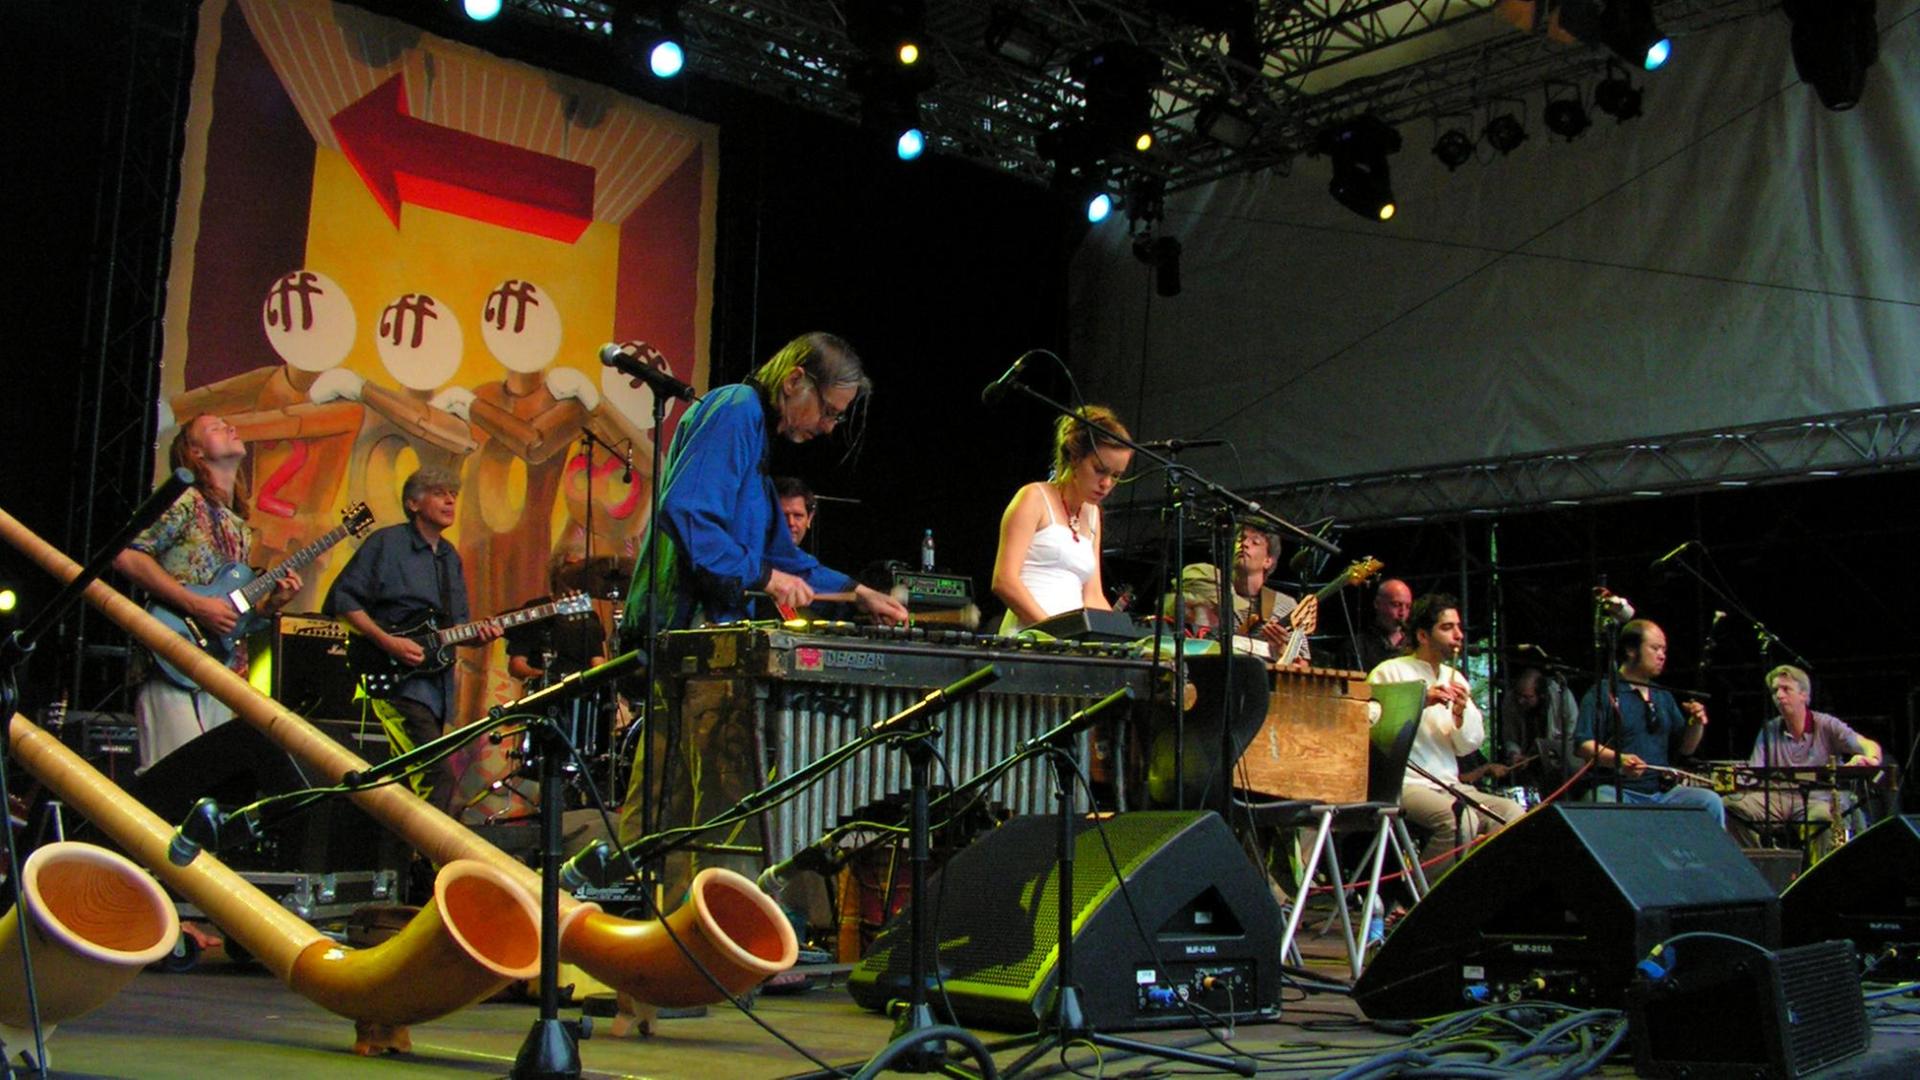 Ausgezeichnet mit dem Weltmusikpreis "Ruth": Die Band Embryo beim Tanz- u. Folkfestival Rudolstadt